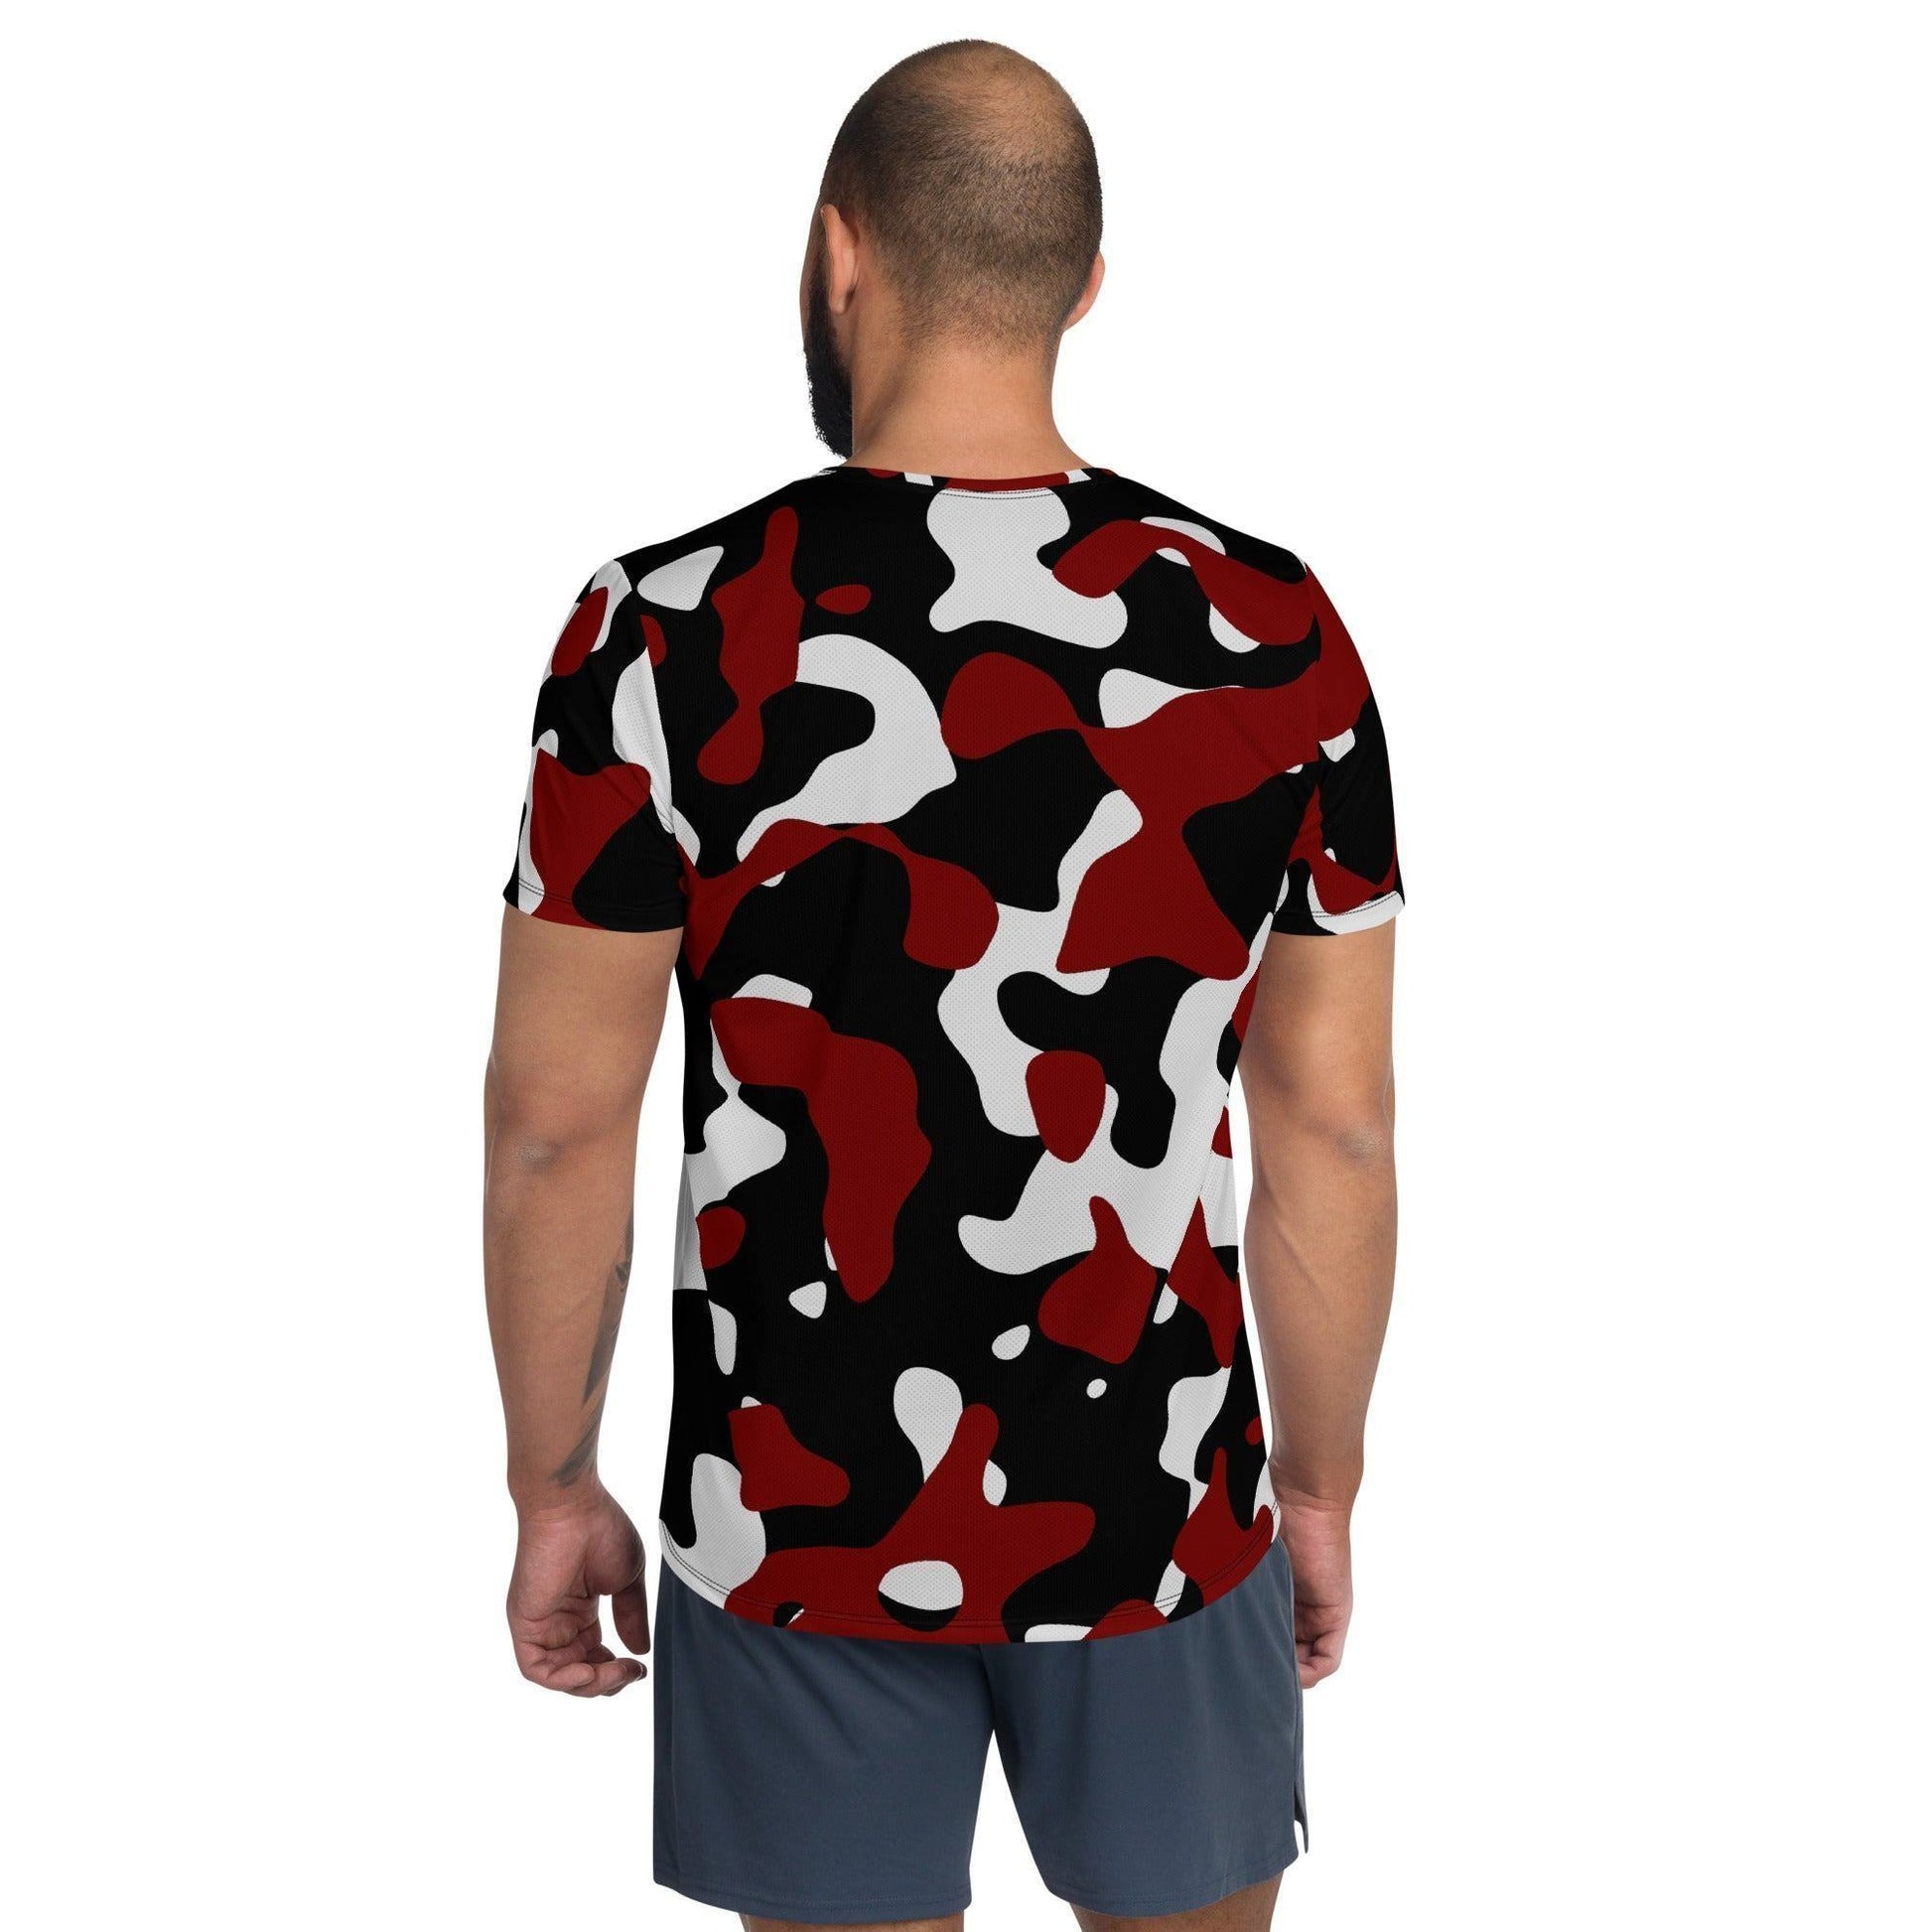 Schwarz Rot Weiß Camouflage Sport T-Shirt für Herren -- Schwarz Rot Weiß Camouflage Sport T-Shirt für Herren - undefined Sport T-Shirt | JLR Design